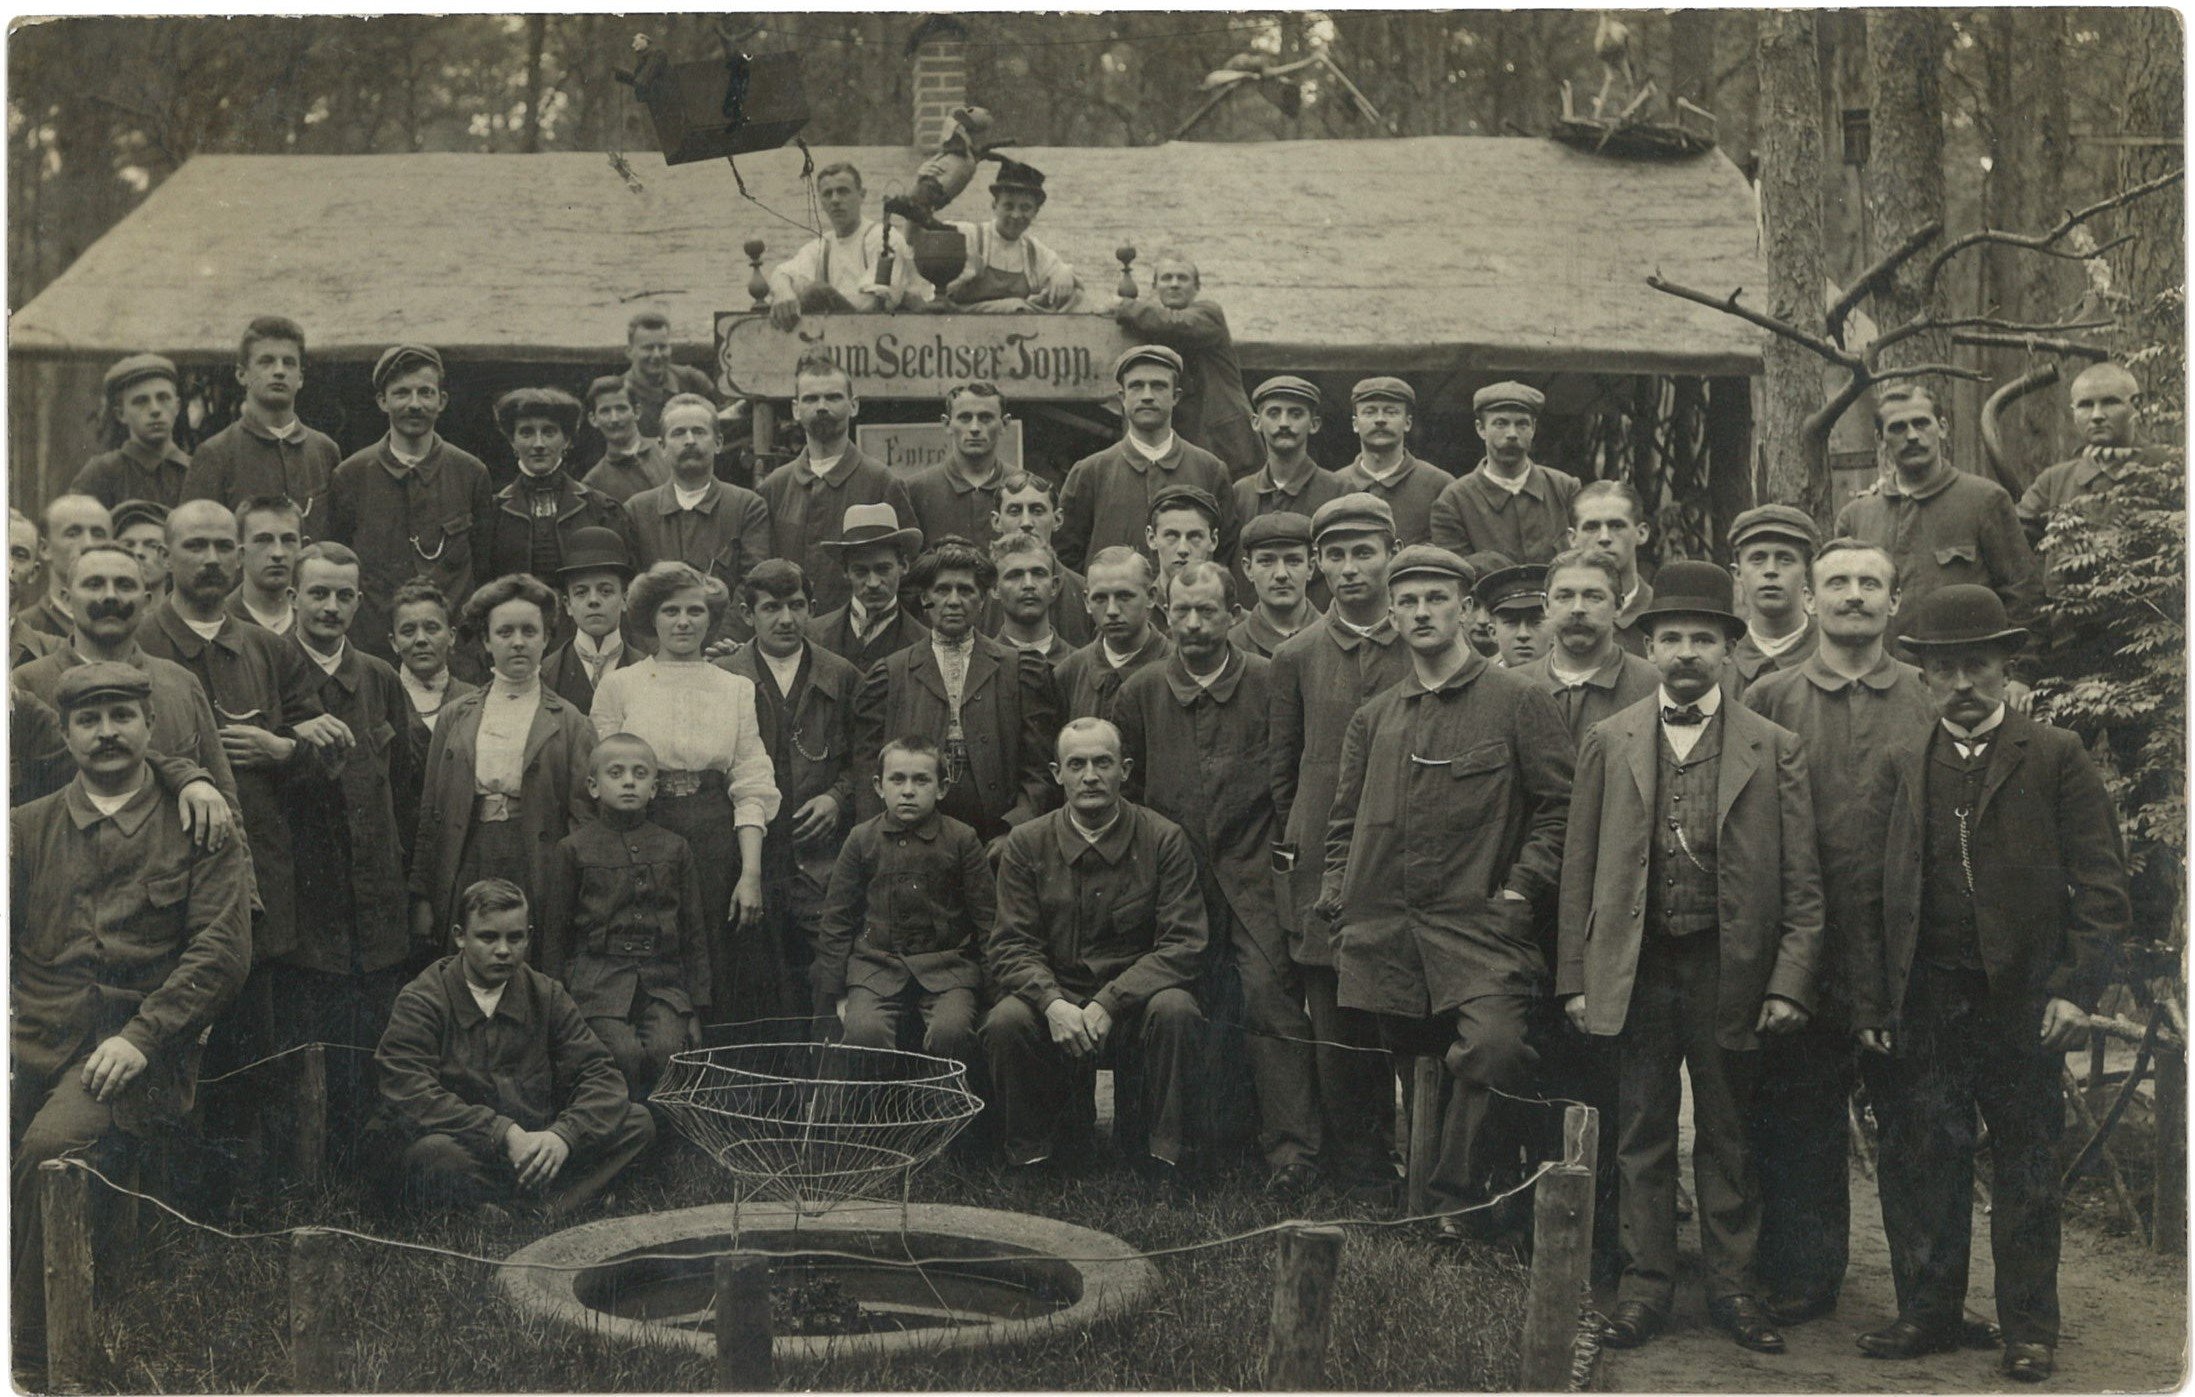 Beelitz-Heilstätten: Patienten-Gruppenbild (Landesgeschichtliche Vereinigung für die Mark Brandenburg e.V., Archiv CC BY)